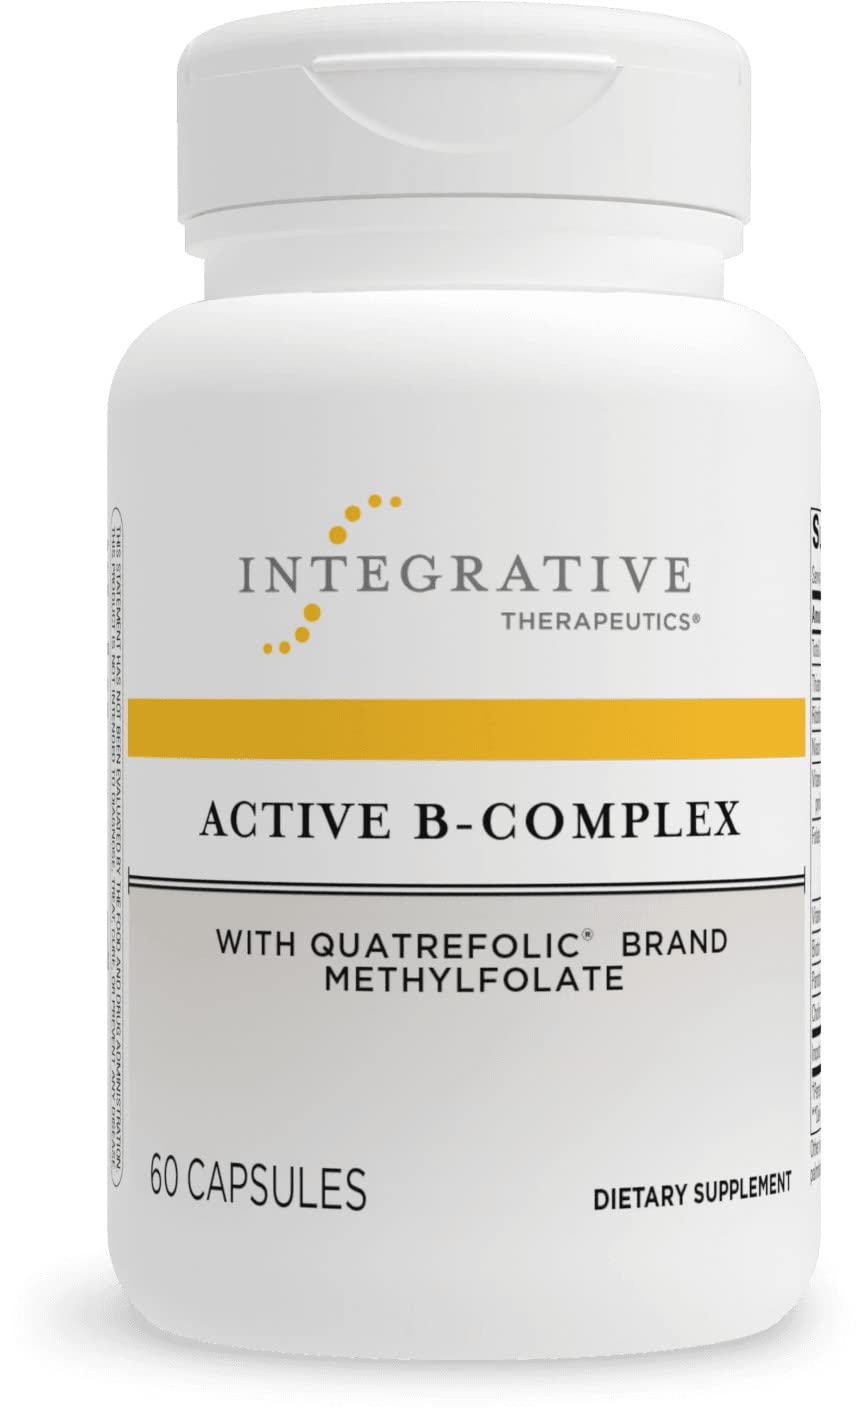 Active B-Complex (Integrative Therapeutics)